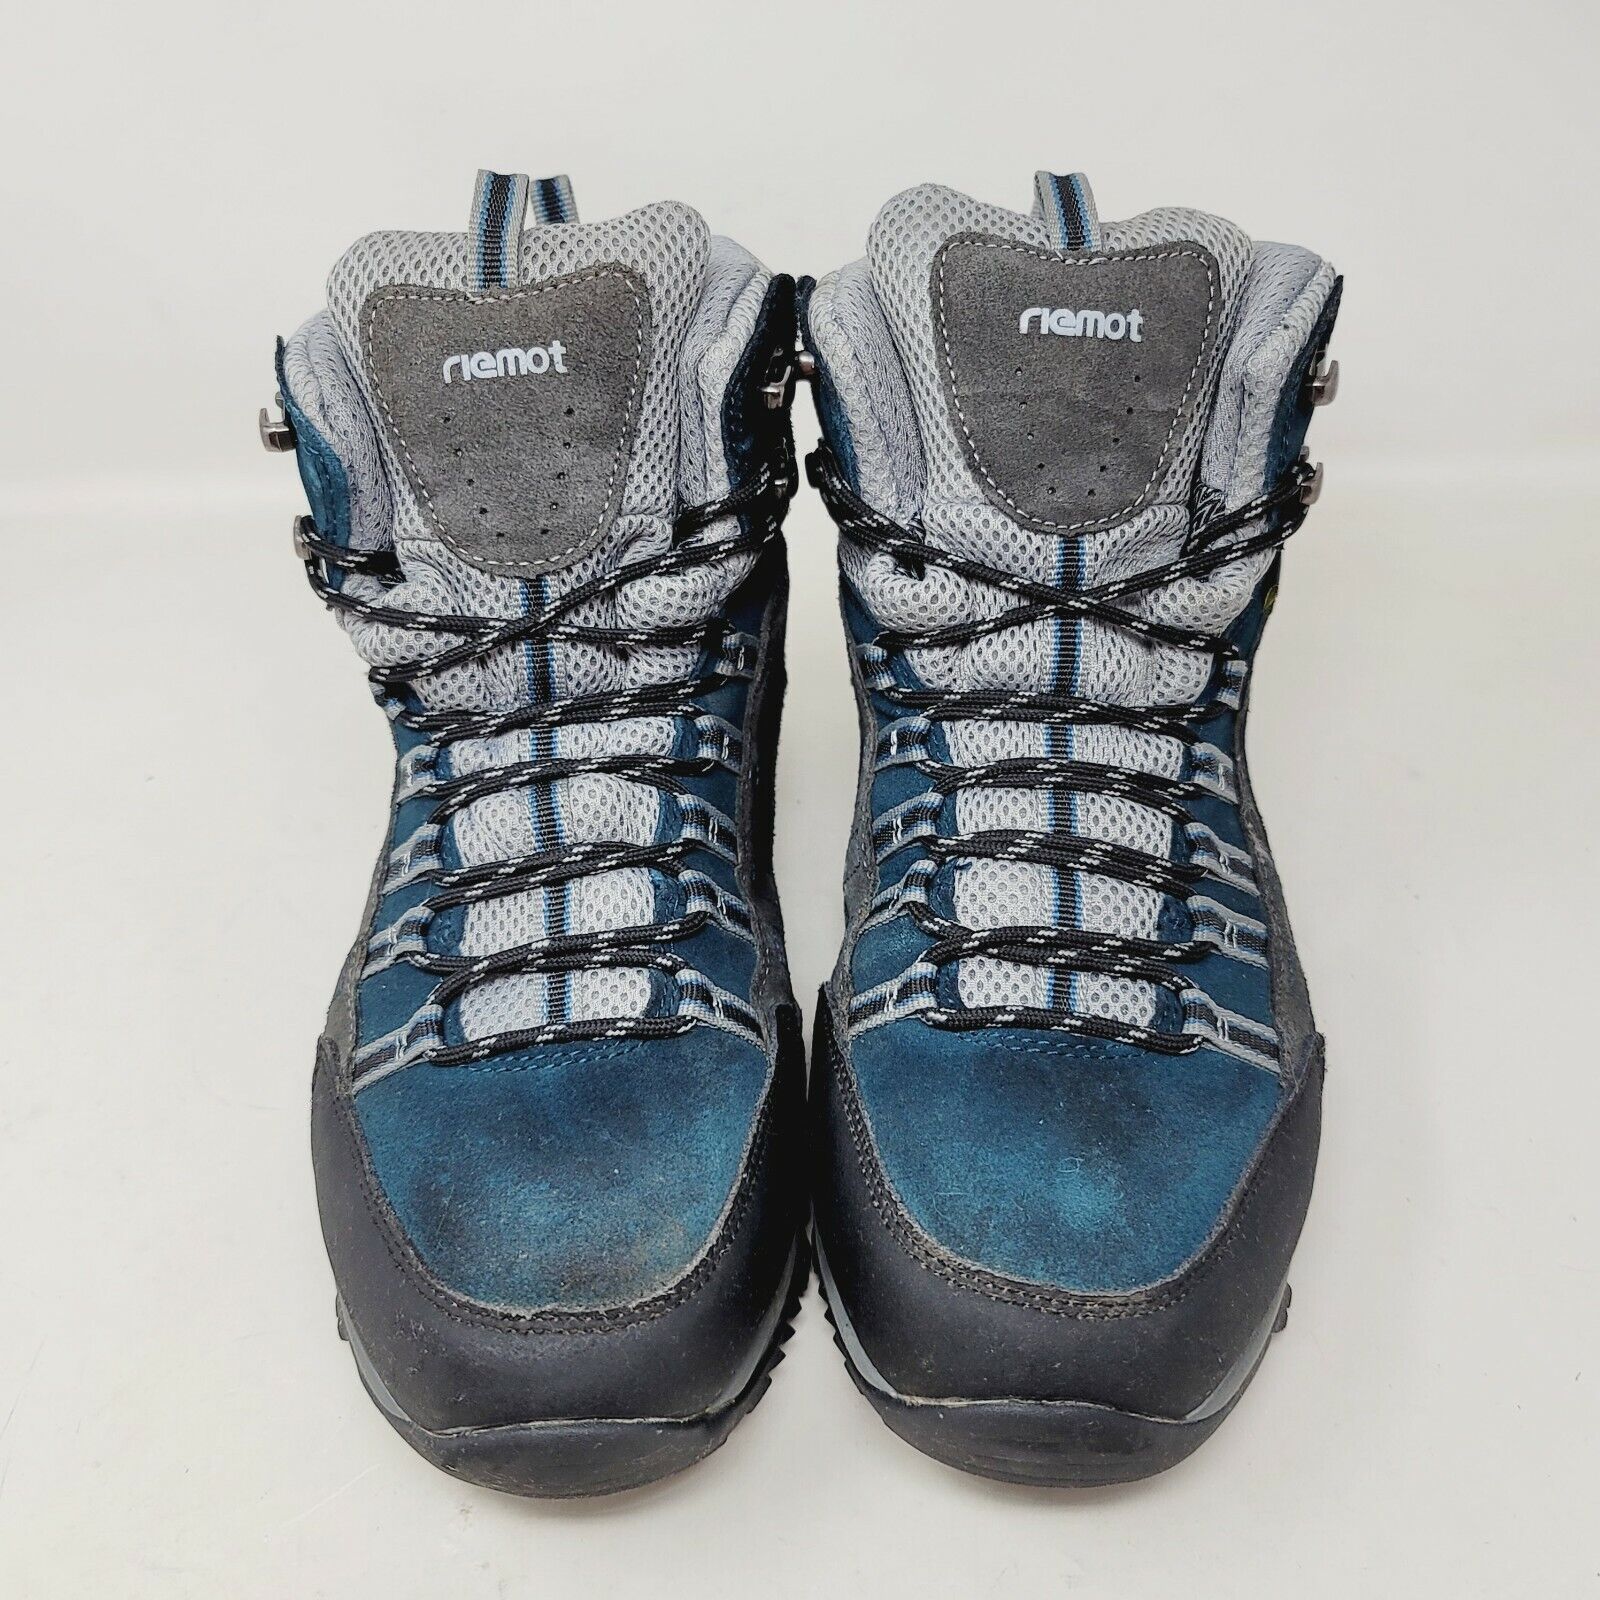 riemot Men's Hiking Boots Size 9 M Waterproof Lightweight Grey Blue RM021